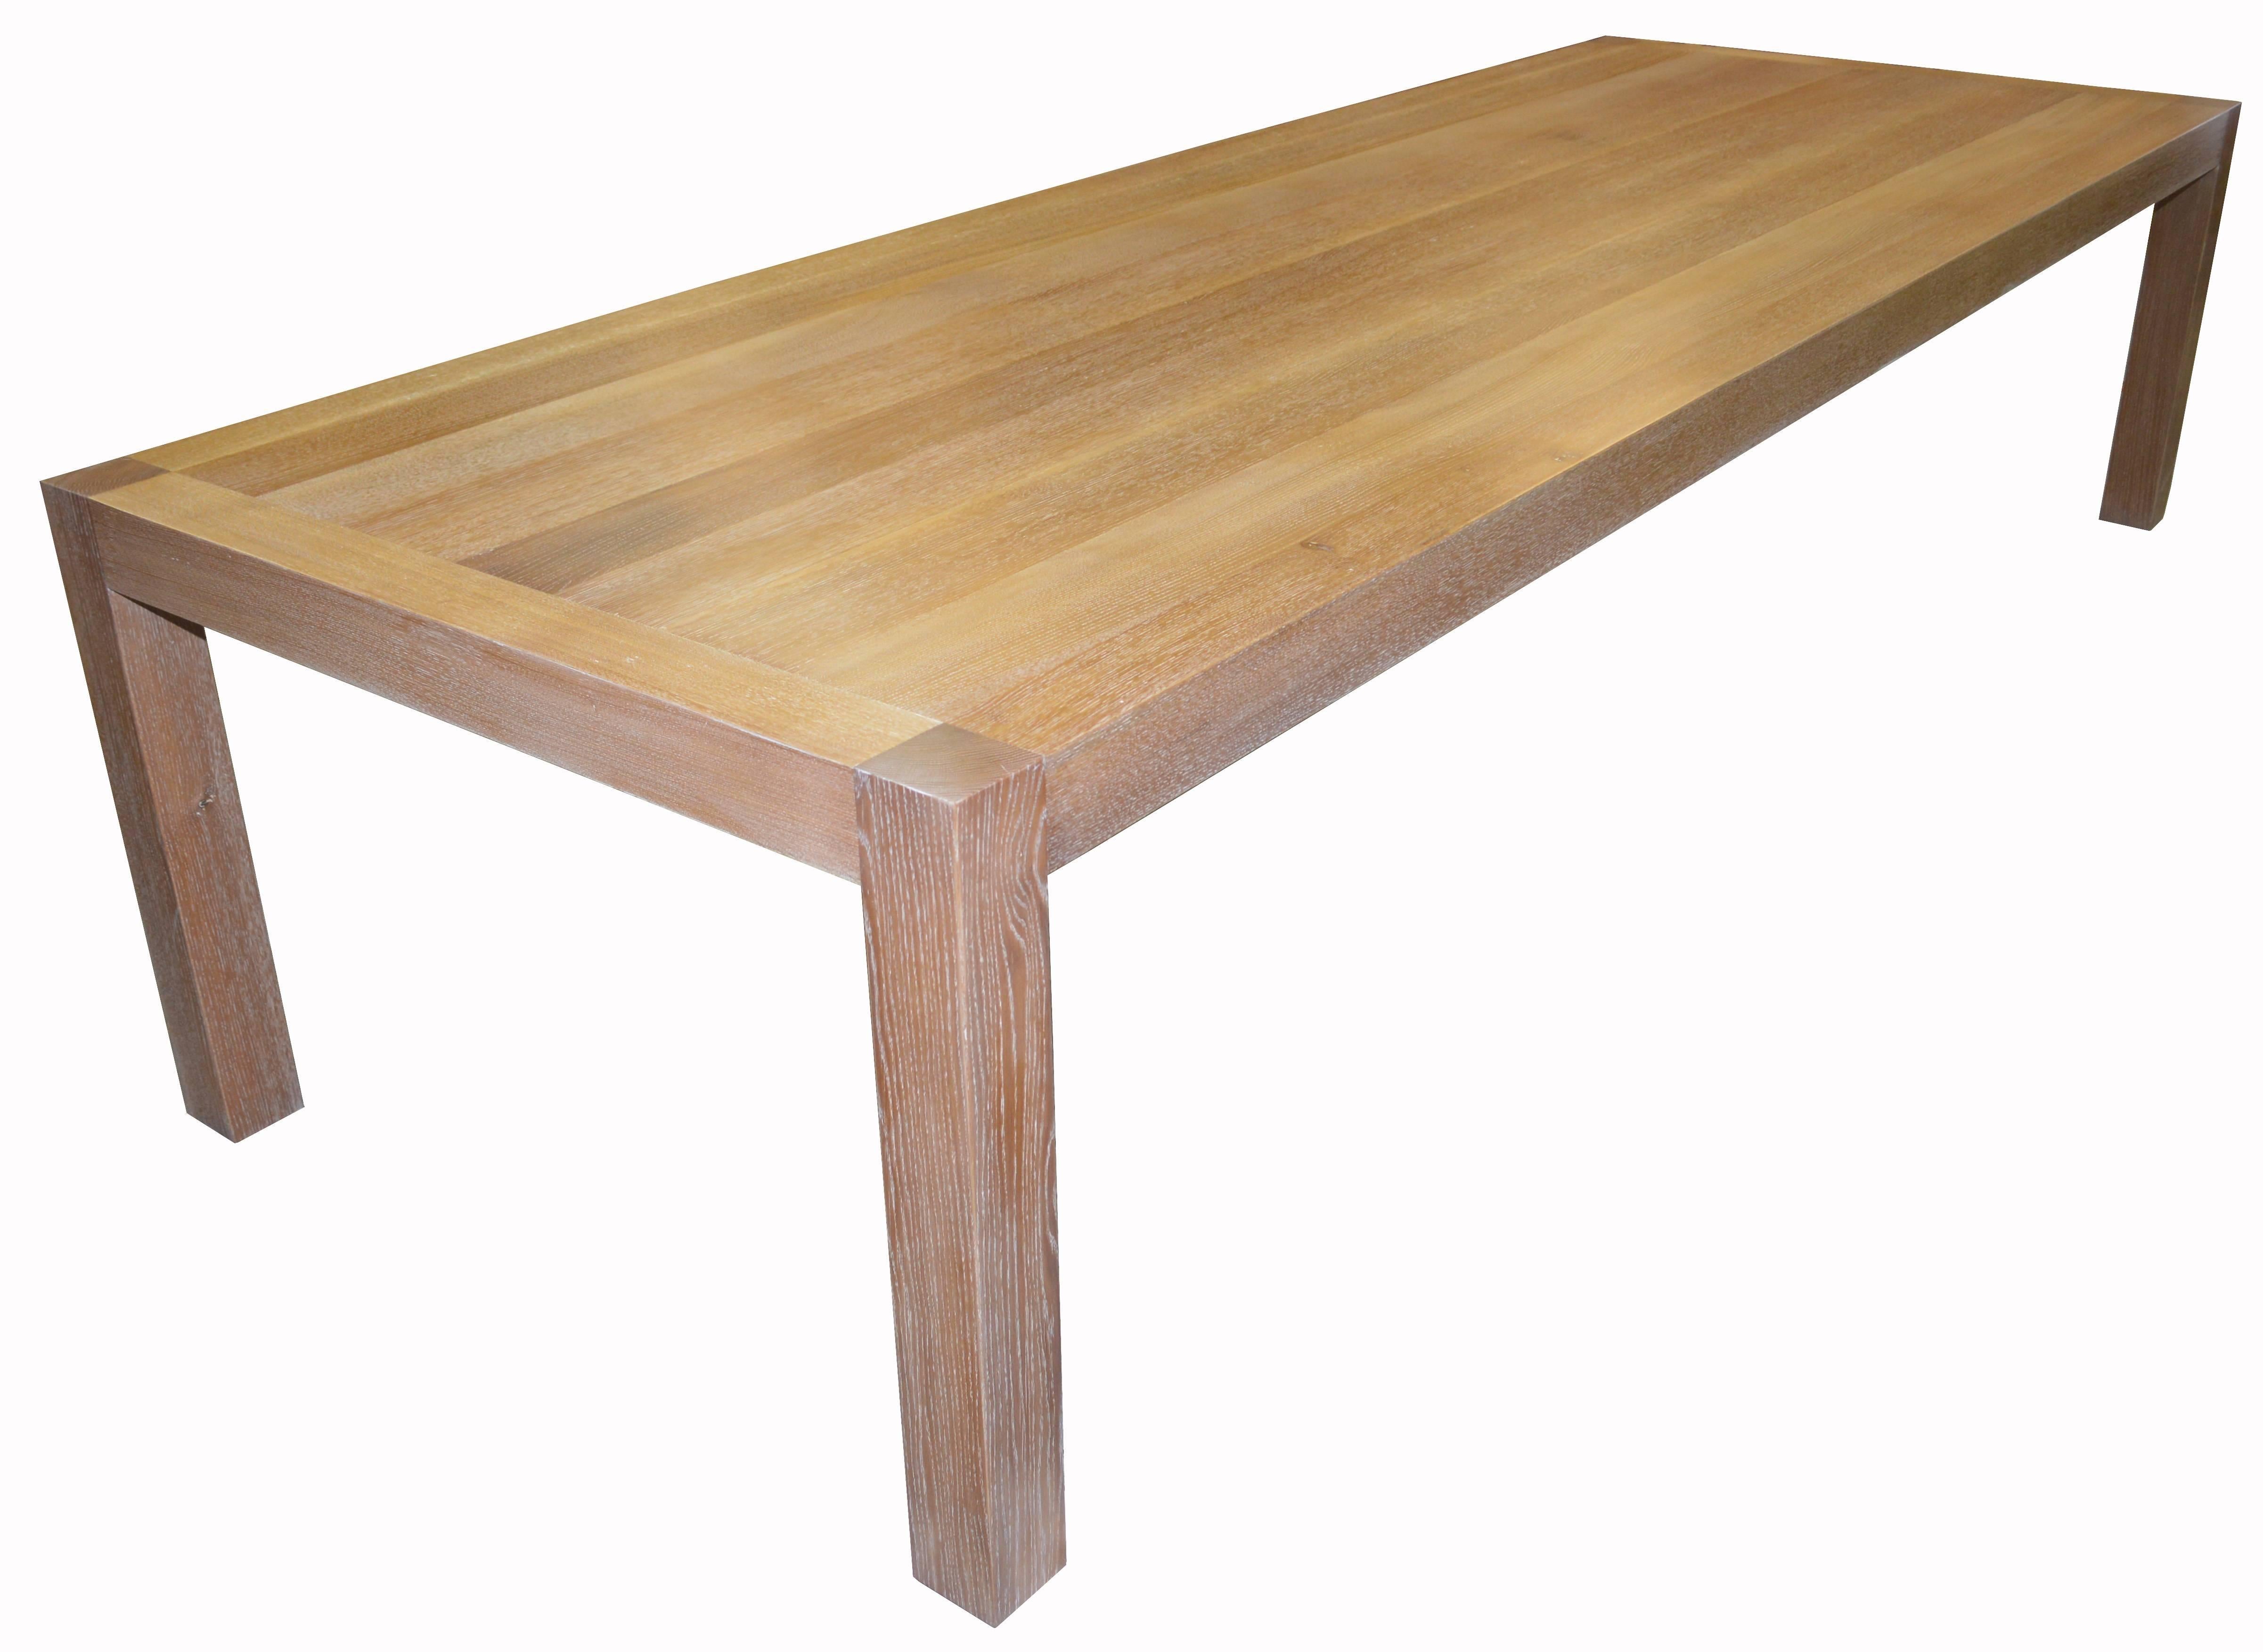 limed oak table